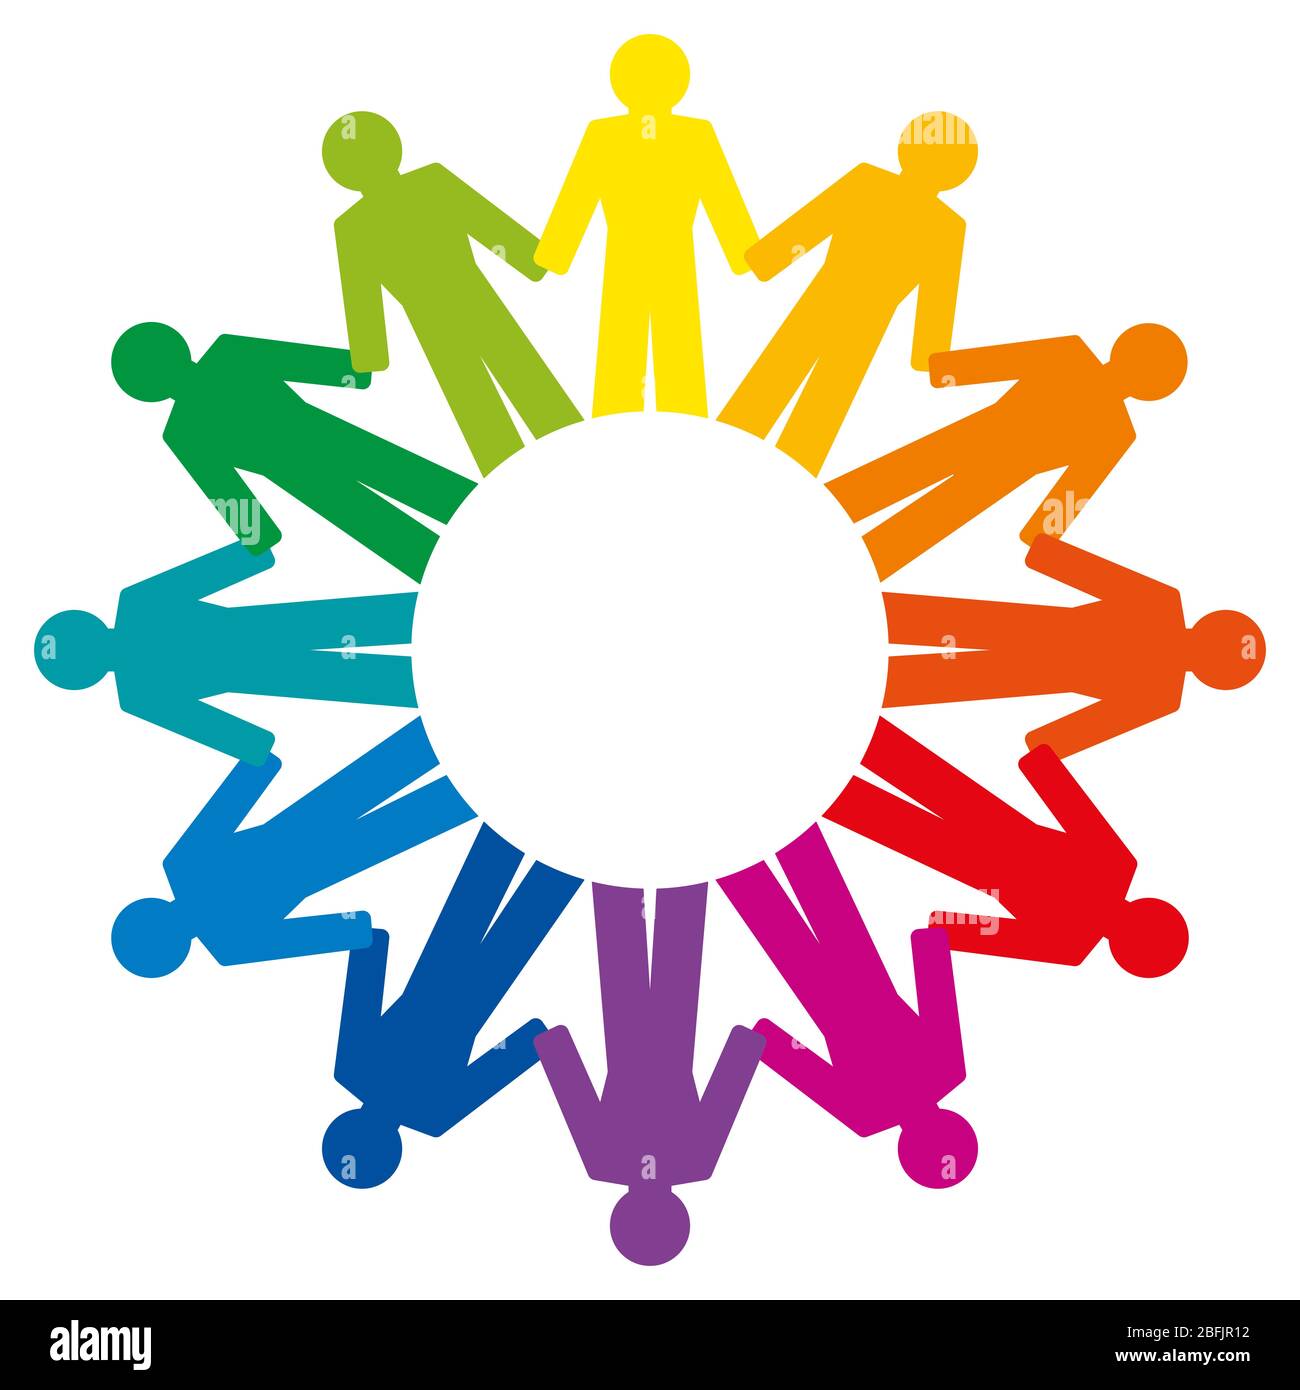 Persone che tengono le mani, formando un cerchio arcobaleno. Simbolo astratto di persone collegate che stanno in cerchio per esprimere amicizia, amore e armonia. Foto Stock